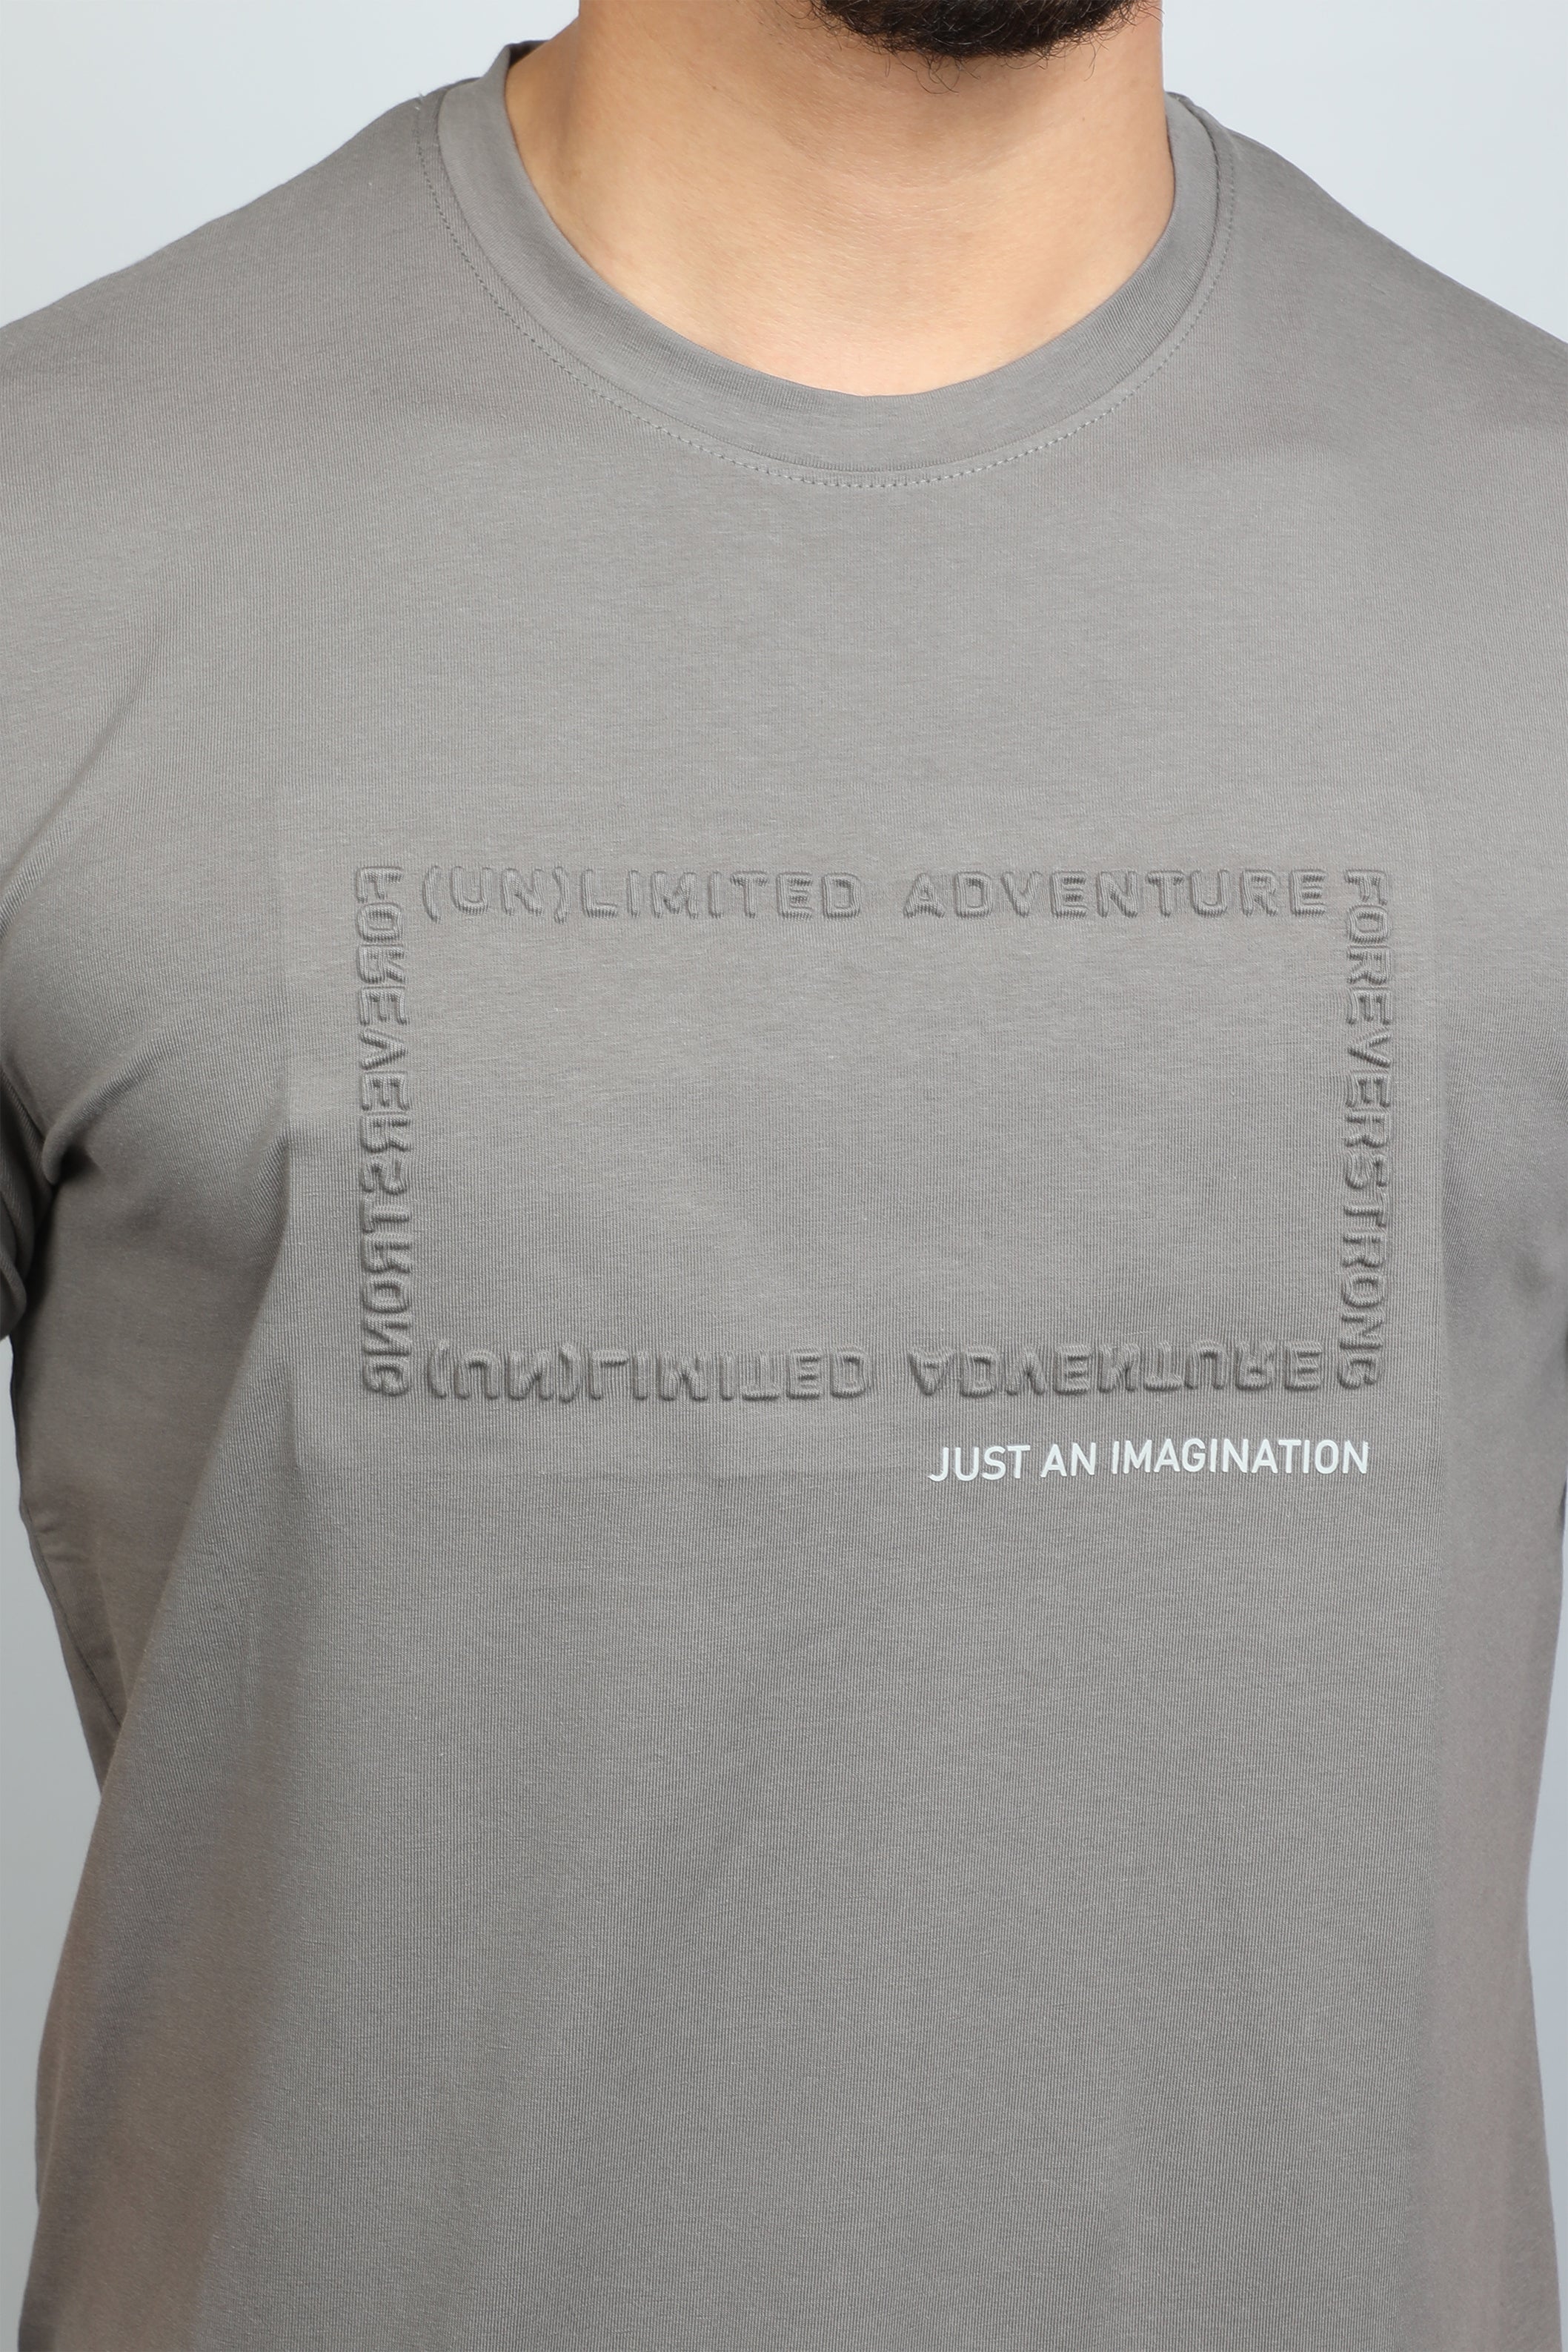 T-shirt Light Grey ' Just An Imagination' Front Design